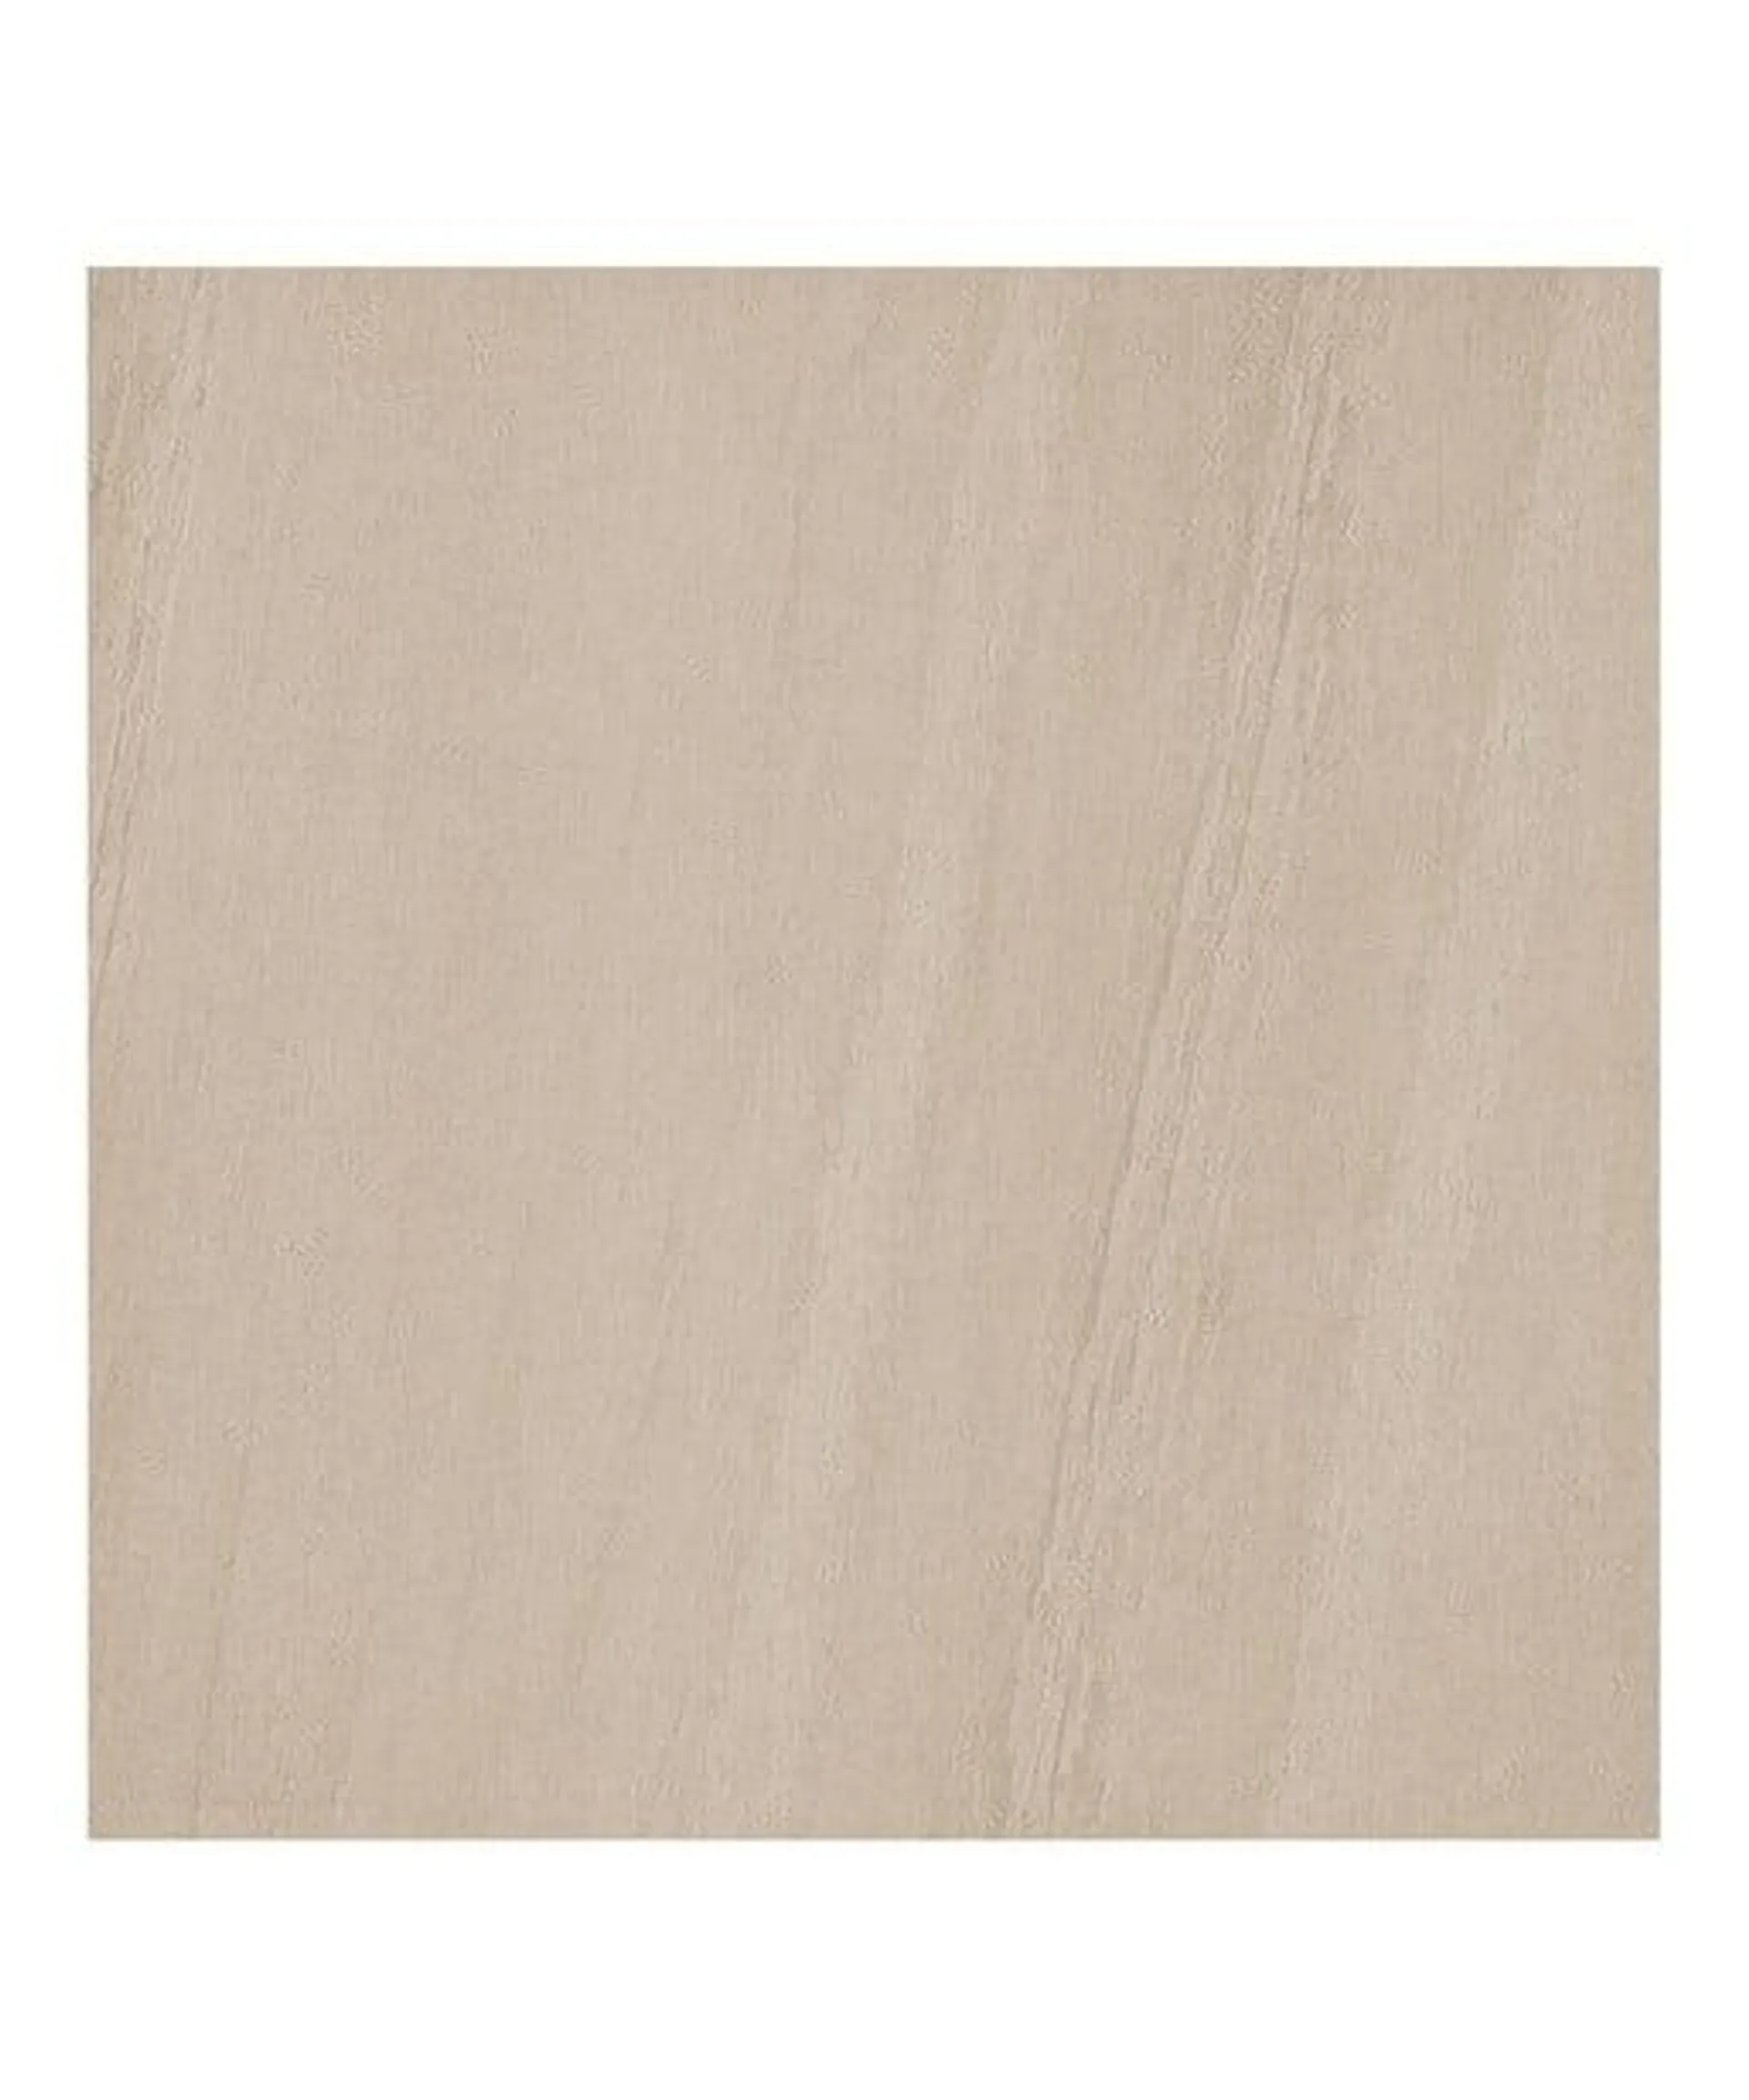 Sandstone Beige Outdoor Tile (60cm x 60cm)